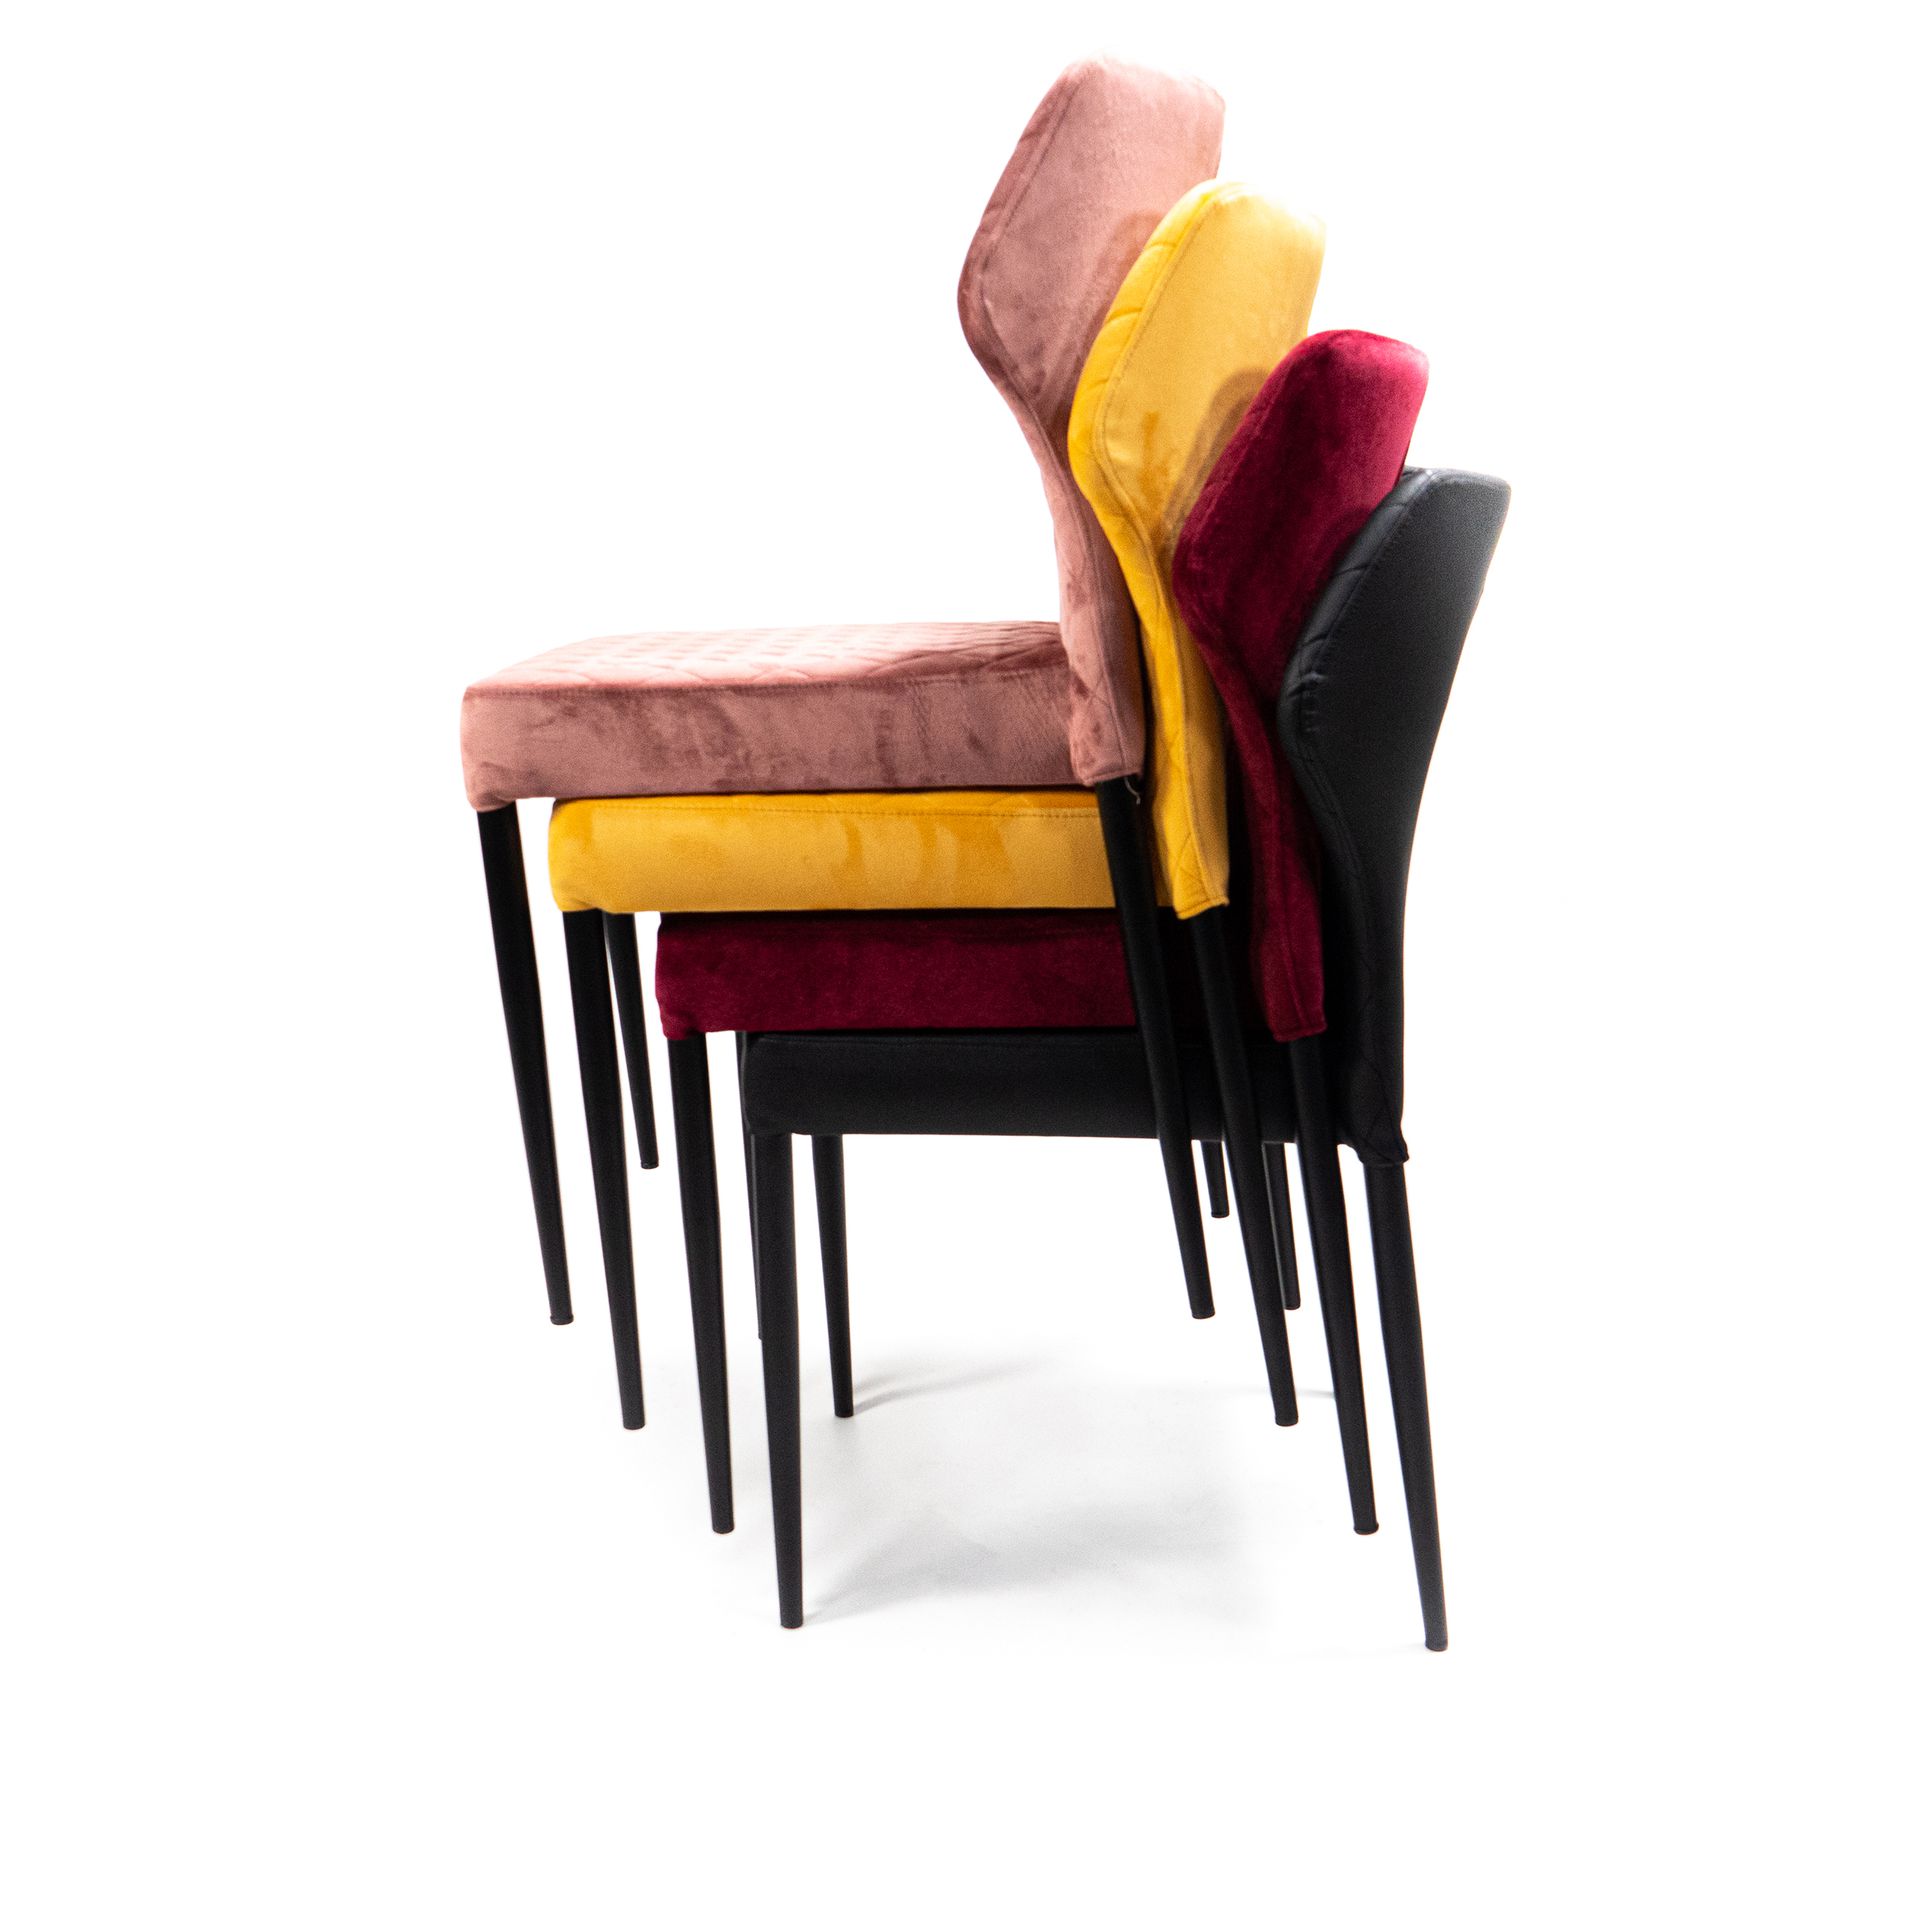 Louis chaise empilable, Jaune, revêtement en velours, ignifuge, 49x57,5x81,5cm (BxTxH), 52005